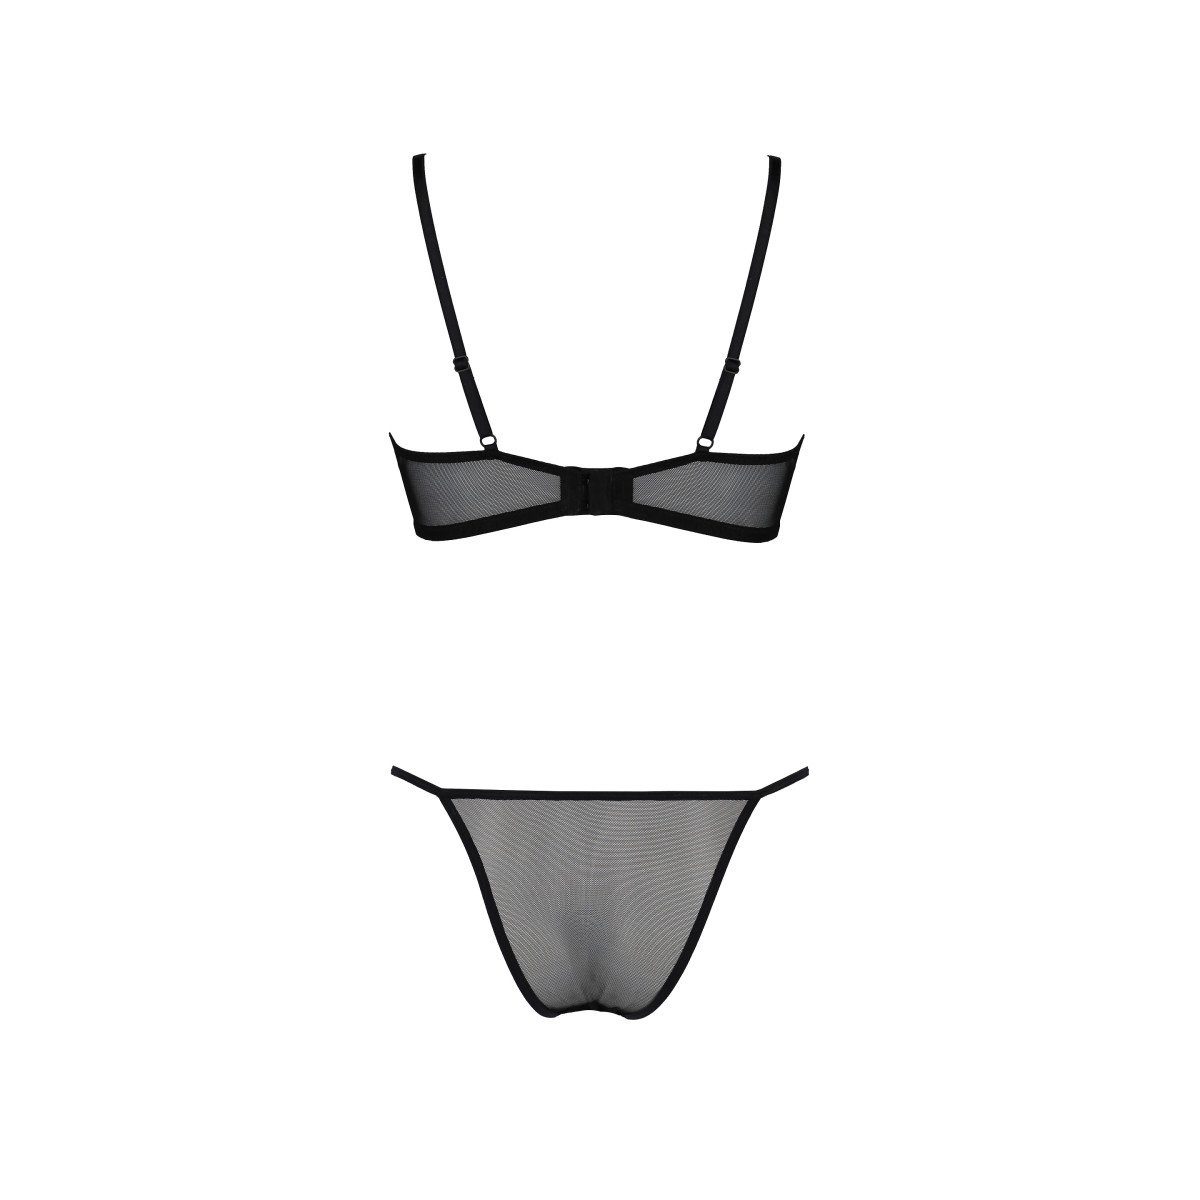 ECO Selaginella bikini (L/XL,S/M,XXL) Collection - Eco PE Bustier Passion black